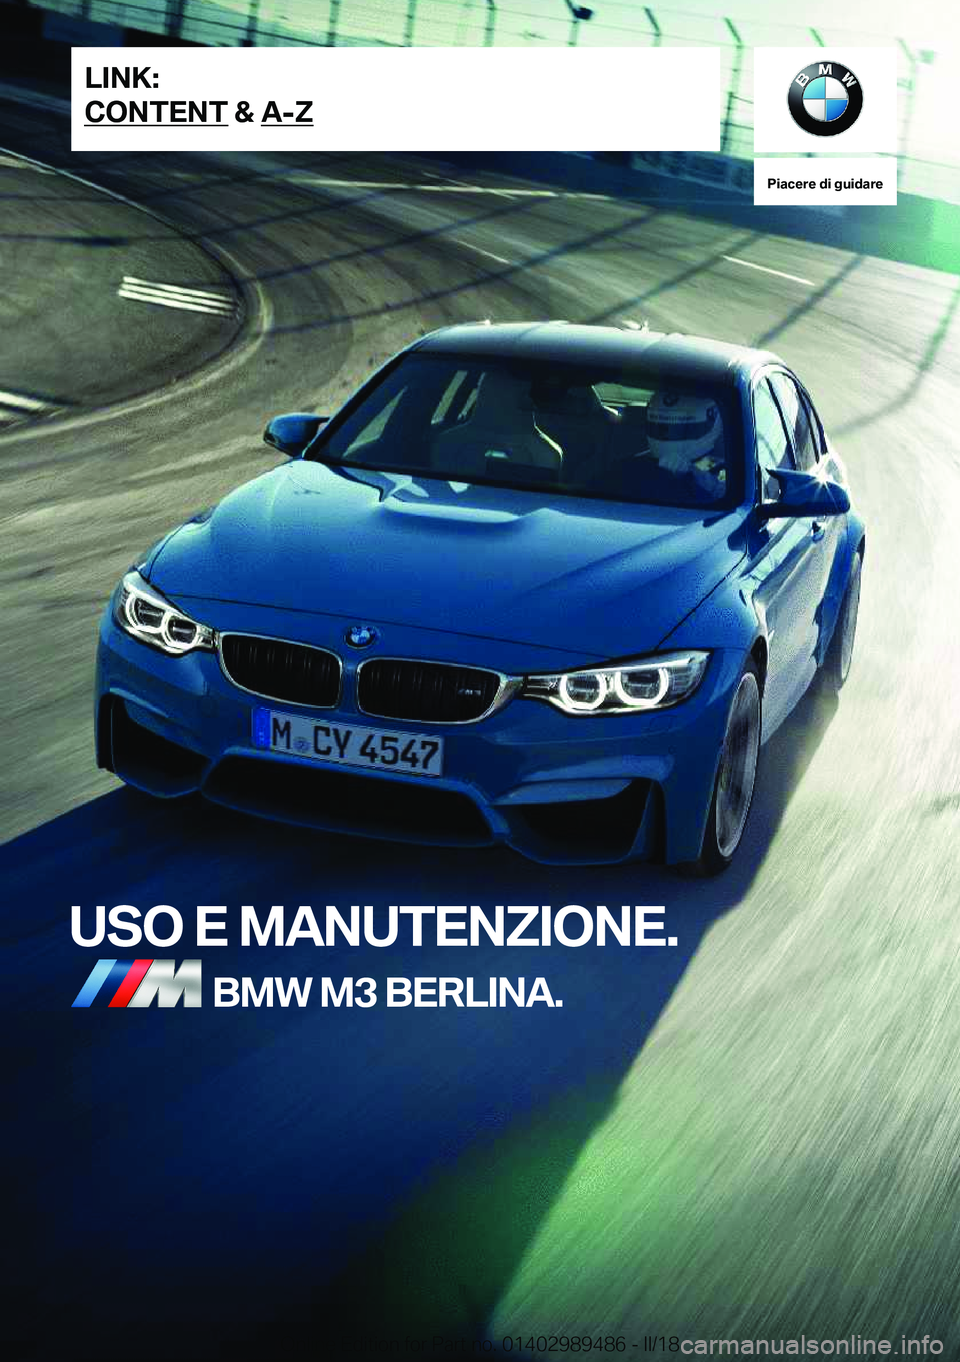 BMW M3 2018  Libretti Di Uso E manutenzione (in Italian) �P�i�a�c�e�r�e��d�i��g�u�i�d�a�r�e
�U�S�O��E��M�A�N�U�T�E�N�;�I�O�N�E�.�B�M�W��M�3��B�E�R�L�I�N�A�.�L�I�N�K�:
�C�O�N�T�E�N�T��&��A�-�;�O�n�l�i�n�e� �E�d�i�t�i�o�n� �f�o�r� �P�a�r�t� �n�o�.� �0